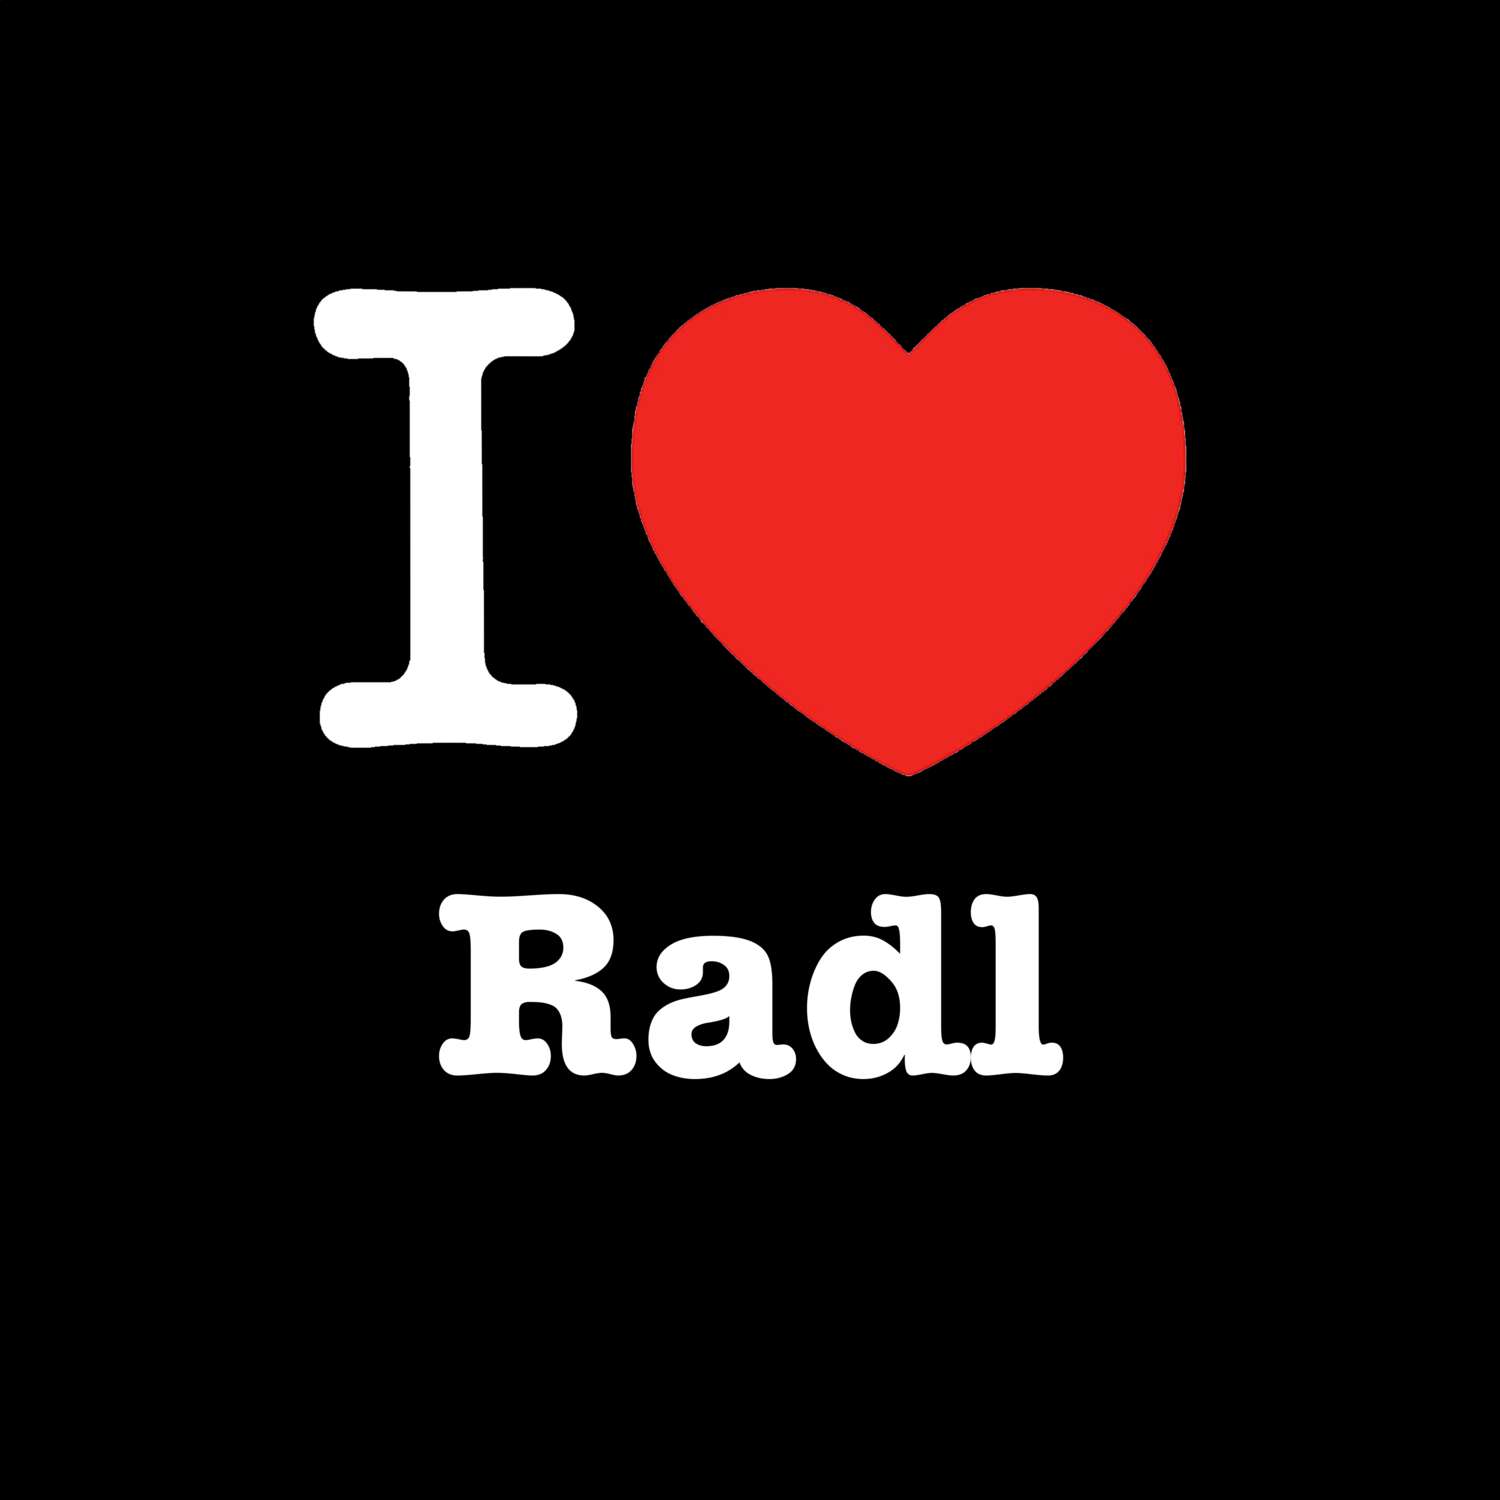 Radl T-Shirt »I love«